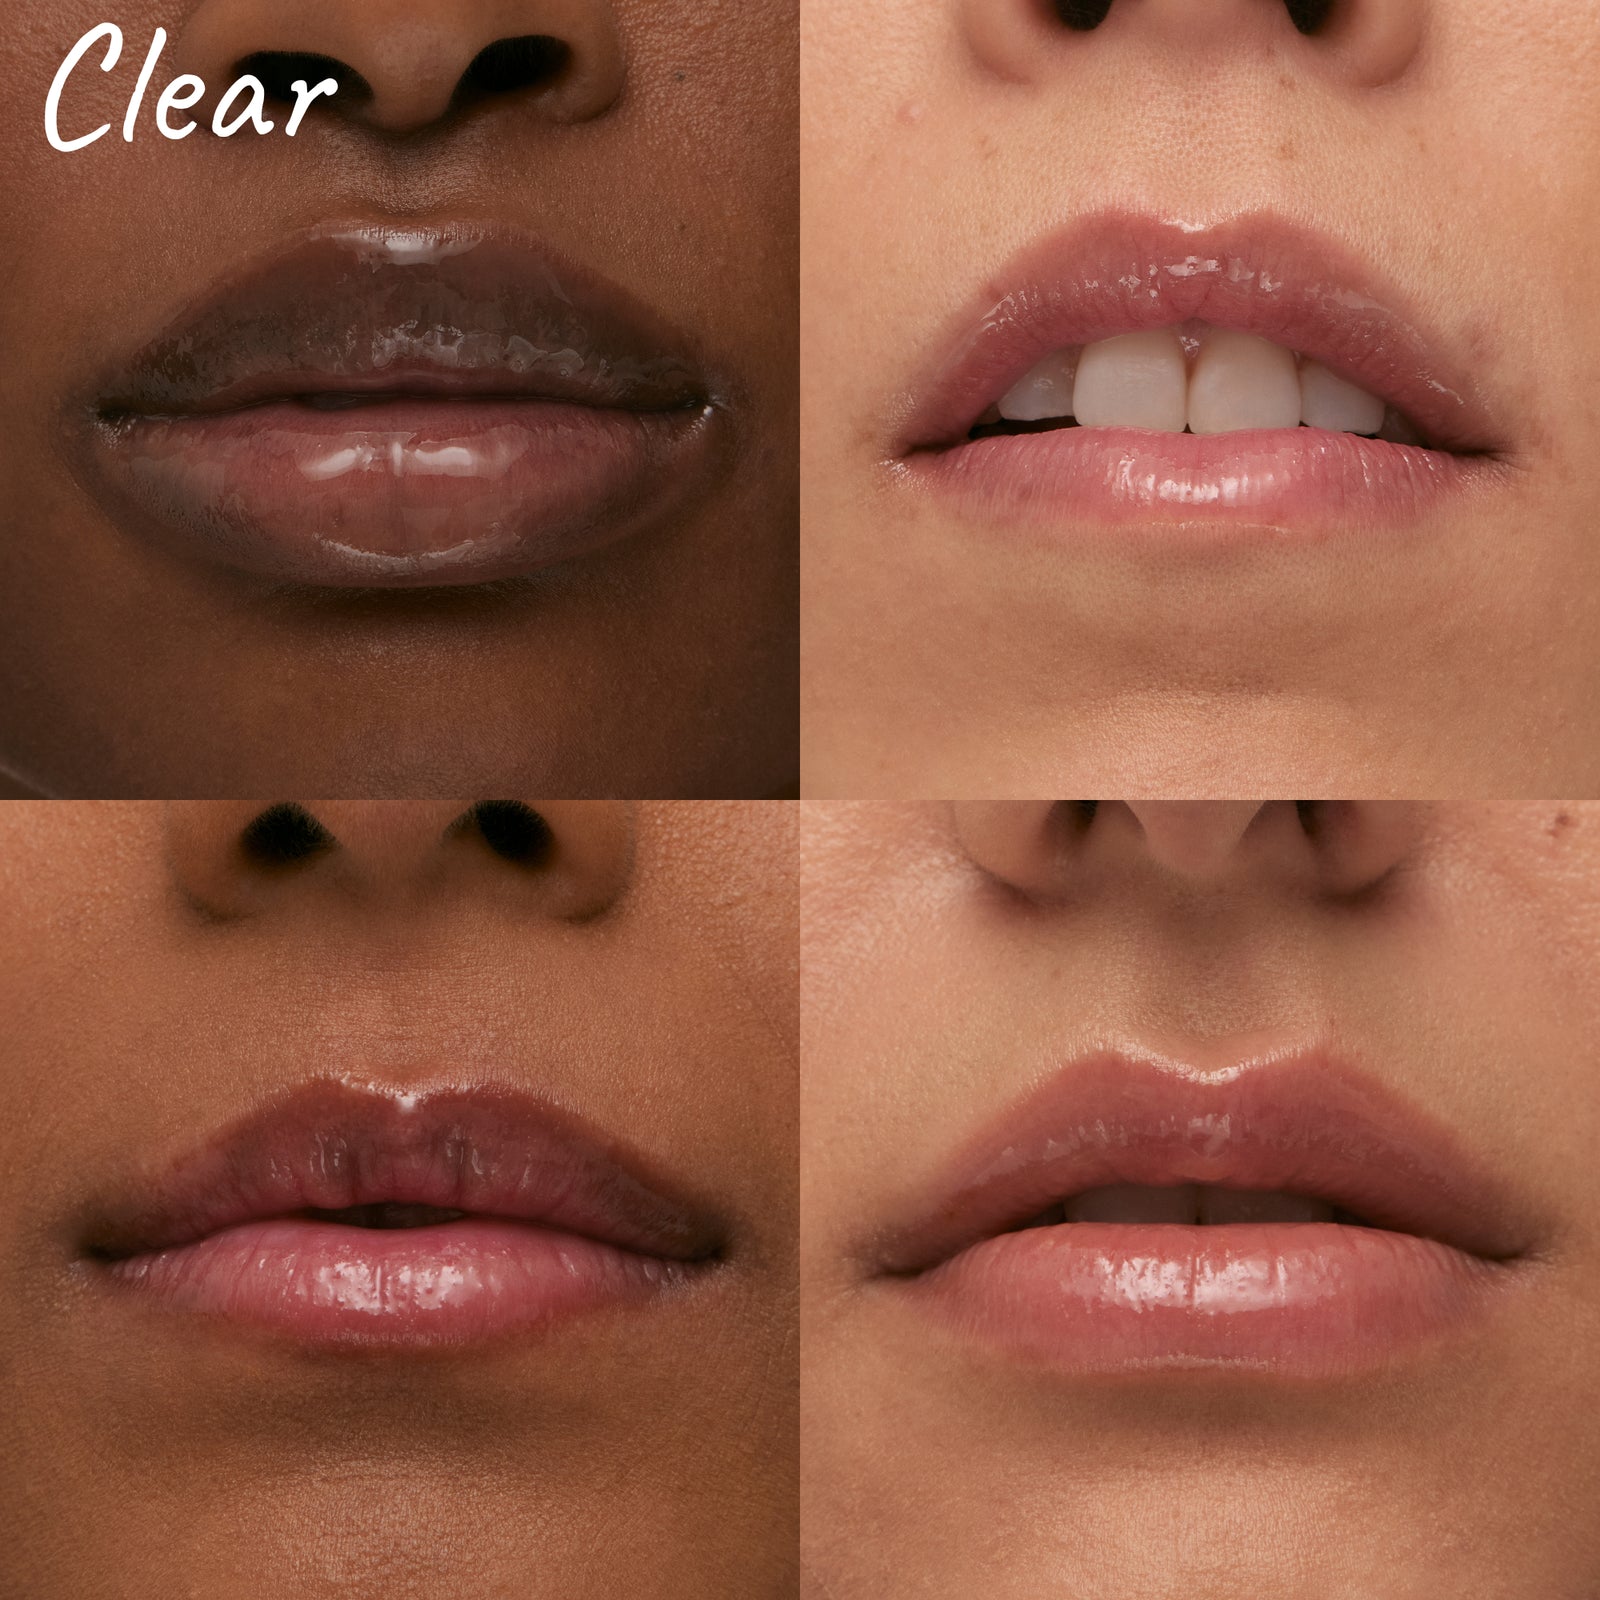 Clear tripeptide lip on models